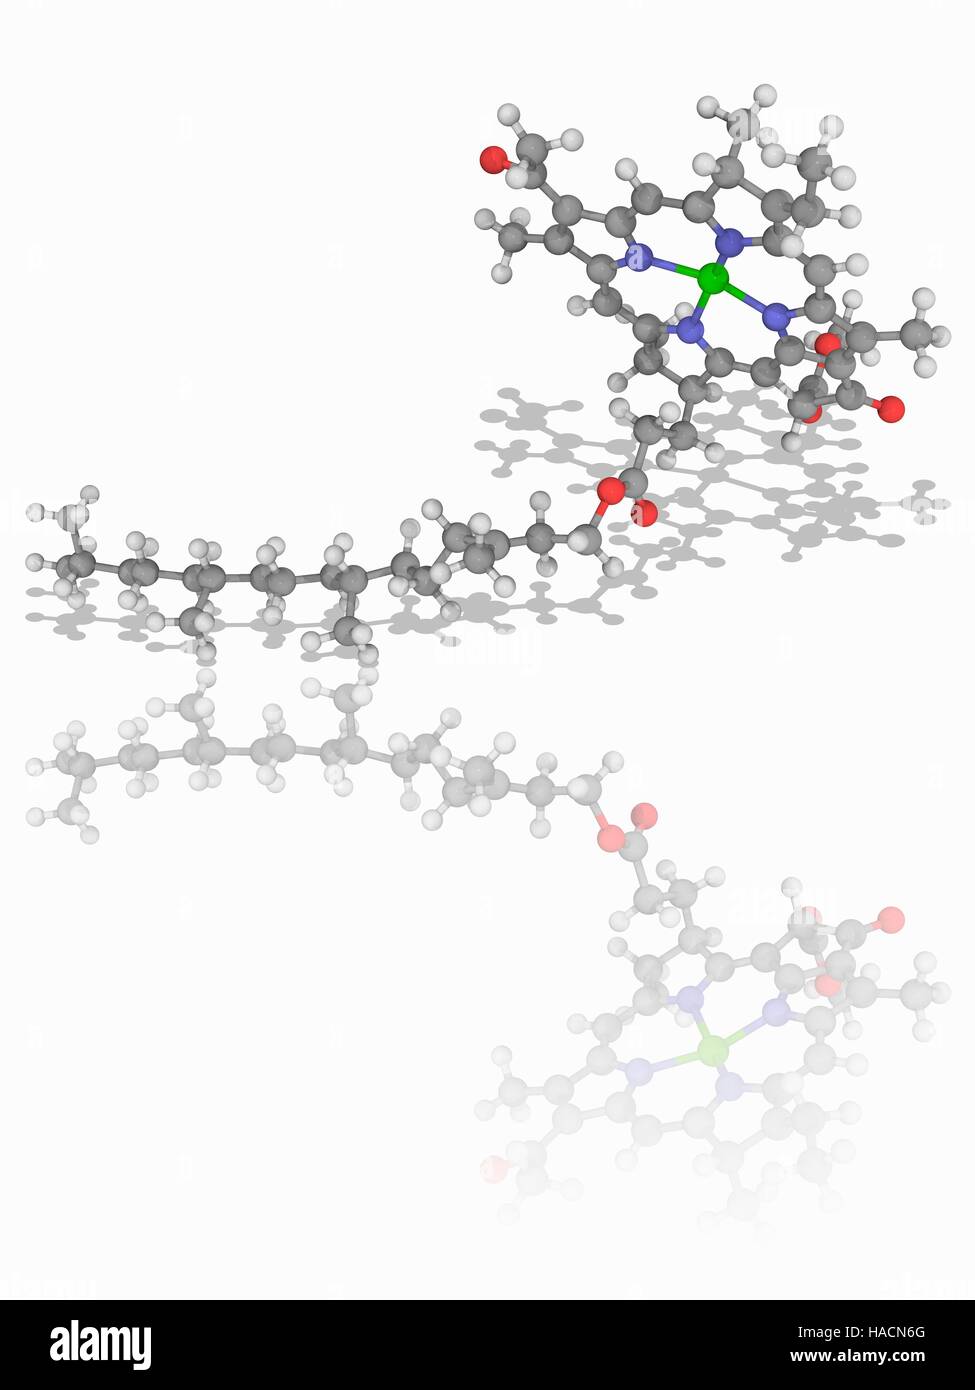 La clorofila B. modelo molecular del pigmento vegetal clorofila B (C55.H70.Mg.N4.O6). Esta molécula tiene un ion magnesio en el centro de un anillo chlorin. Desempeña un papel esencial en la fotosíntesis de las plantas. Los átomos son representados como esferas y están codificados por color (gris): carbono, hidrógeno, nitrógeno (blanco) (azul), el oxígeno (rojo) y magnesio (verde). Ilustración. Foto de stock